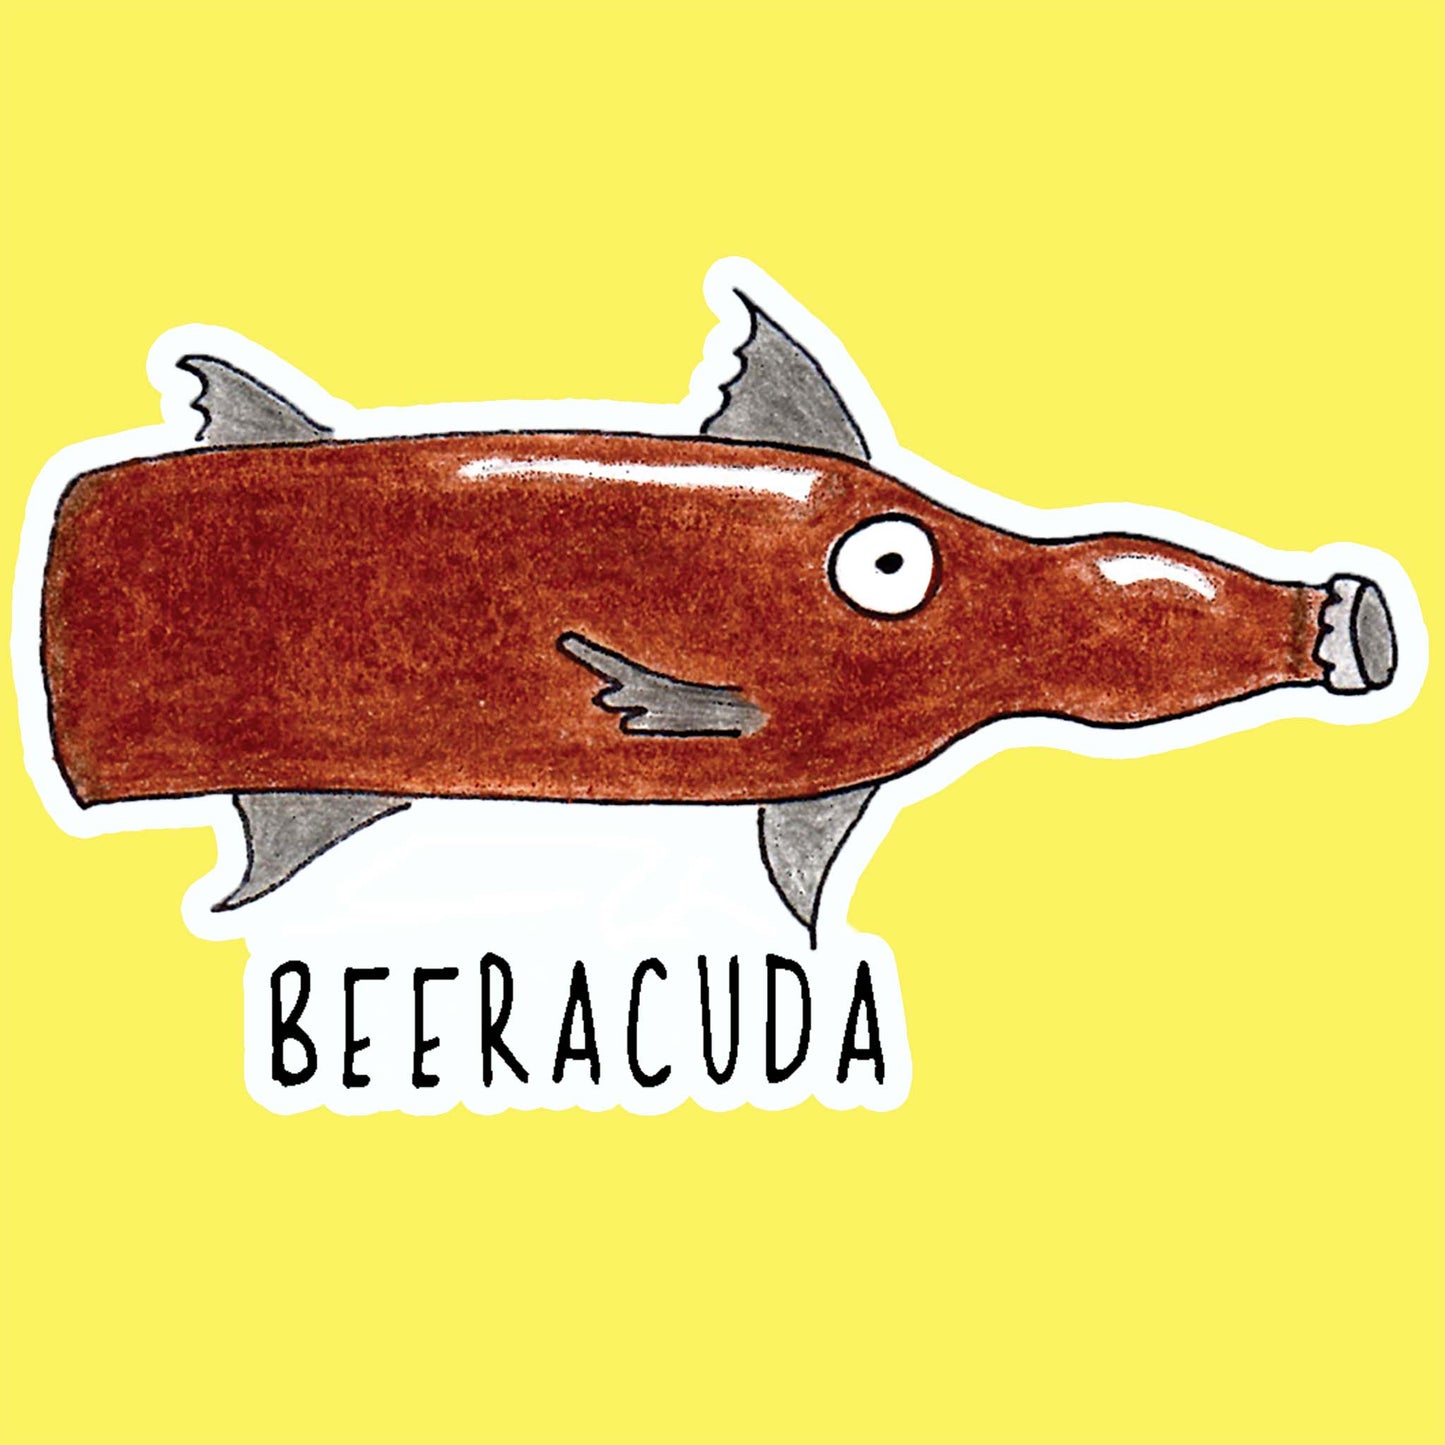 Beeracuda Stickers | 4 Pack